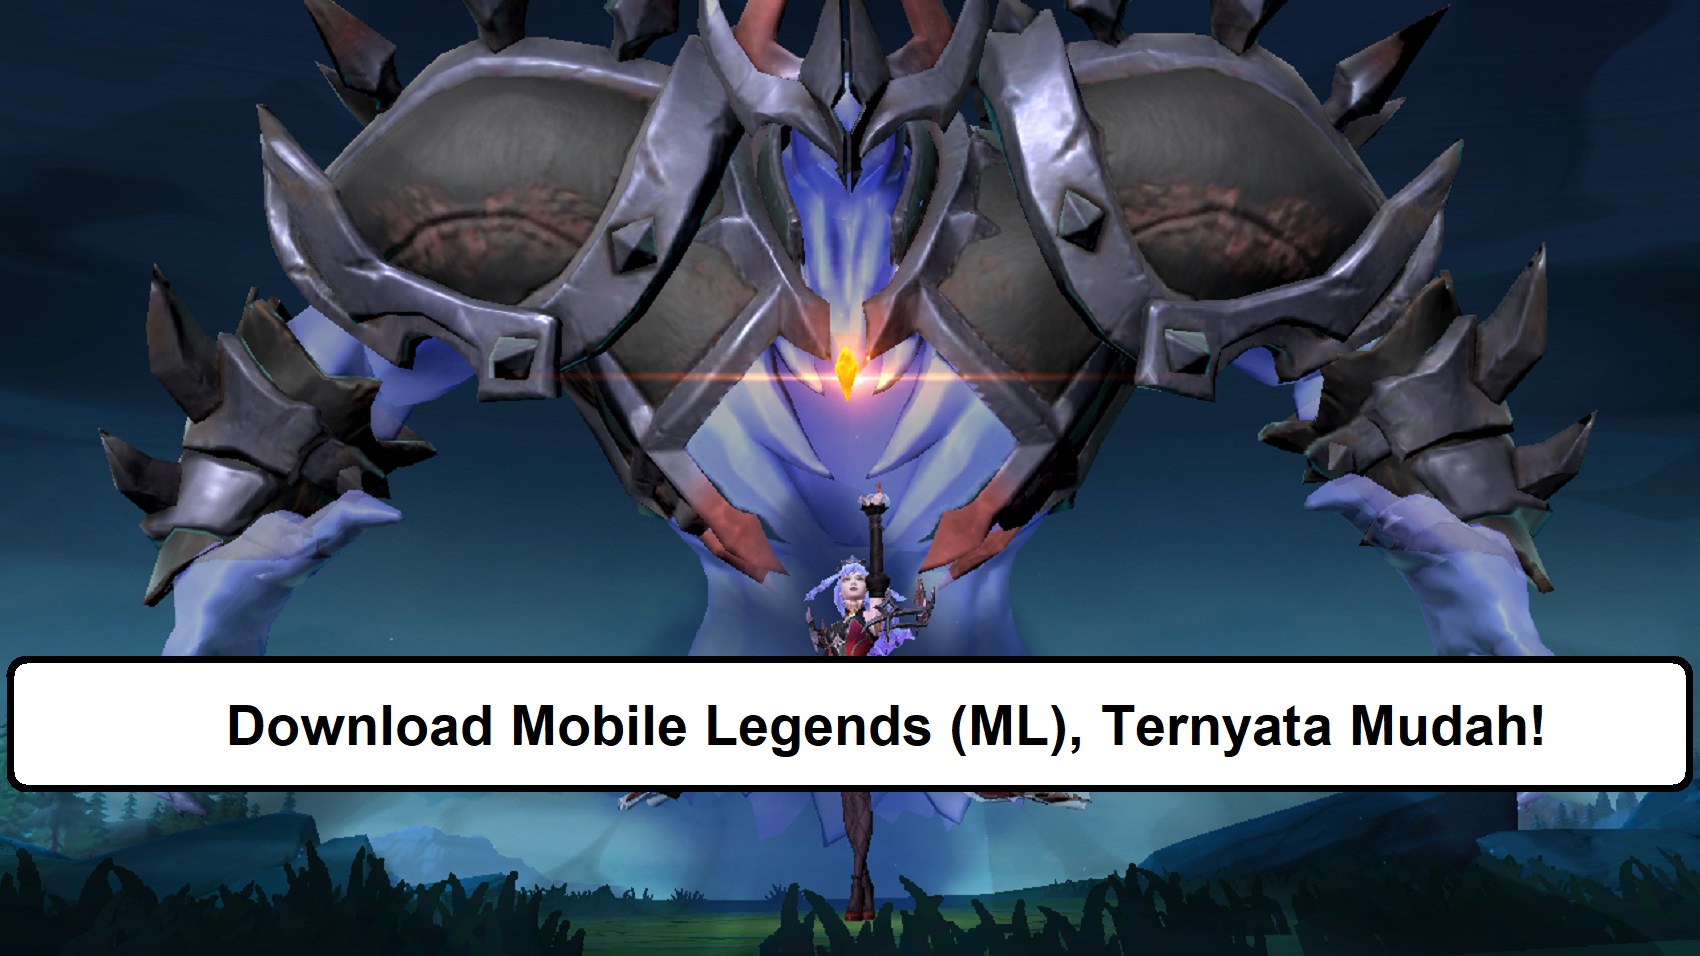 Download Mobile Legends (ML), Ternyata Mudah!